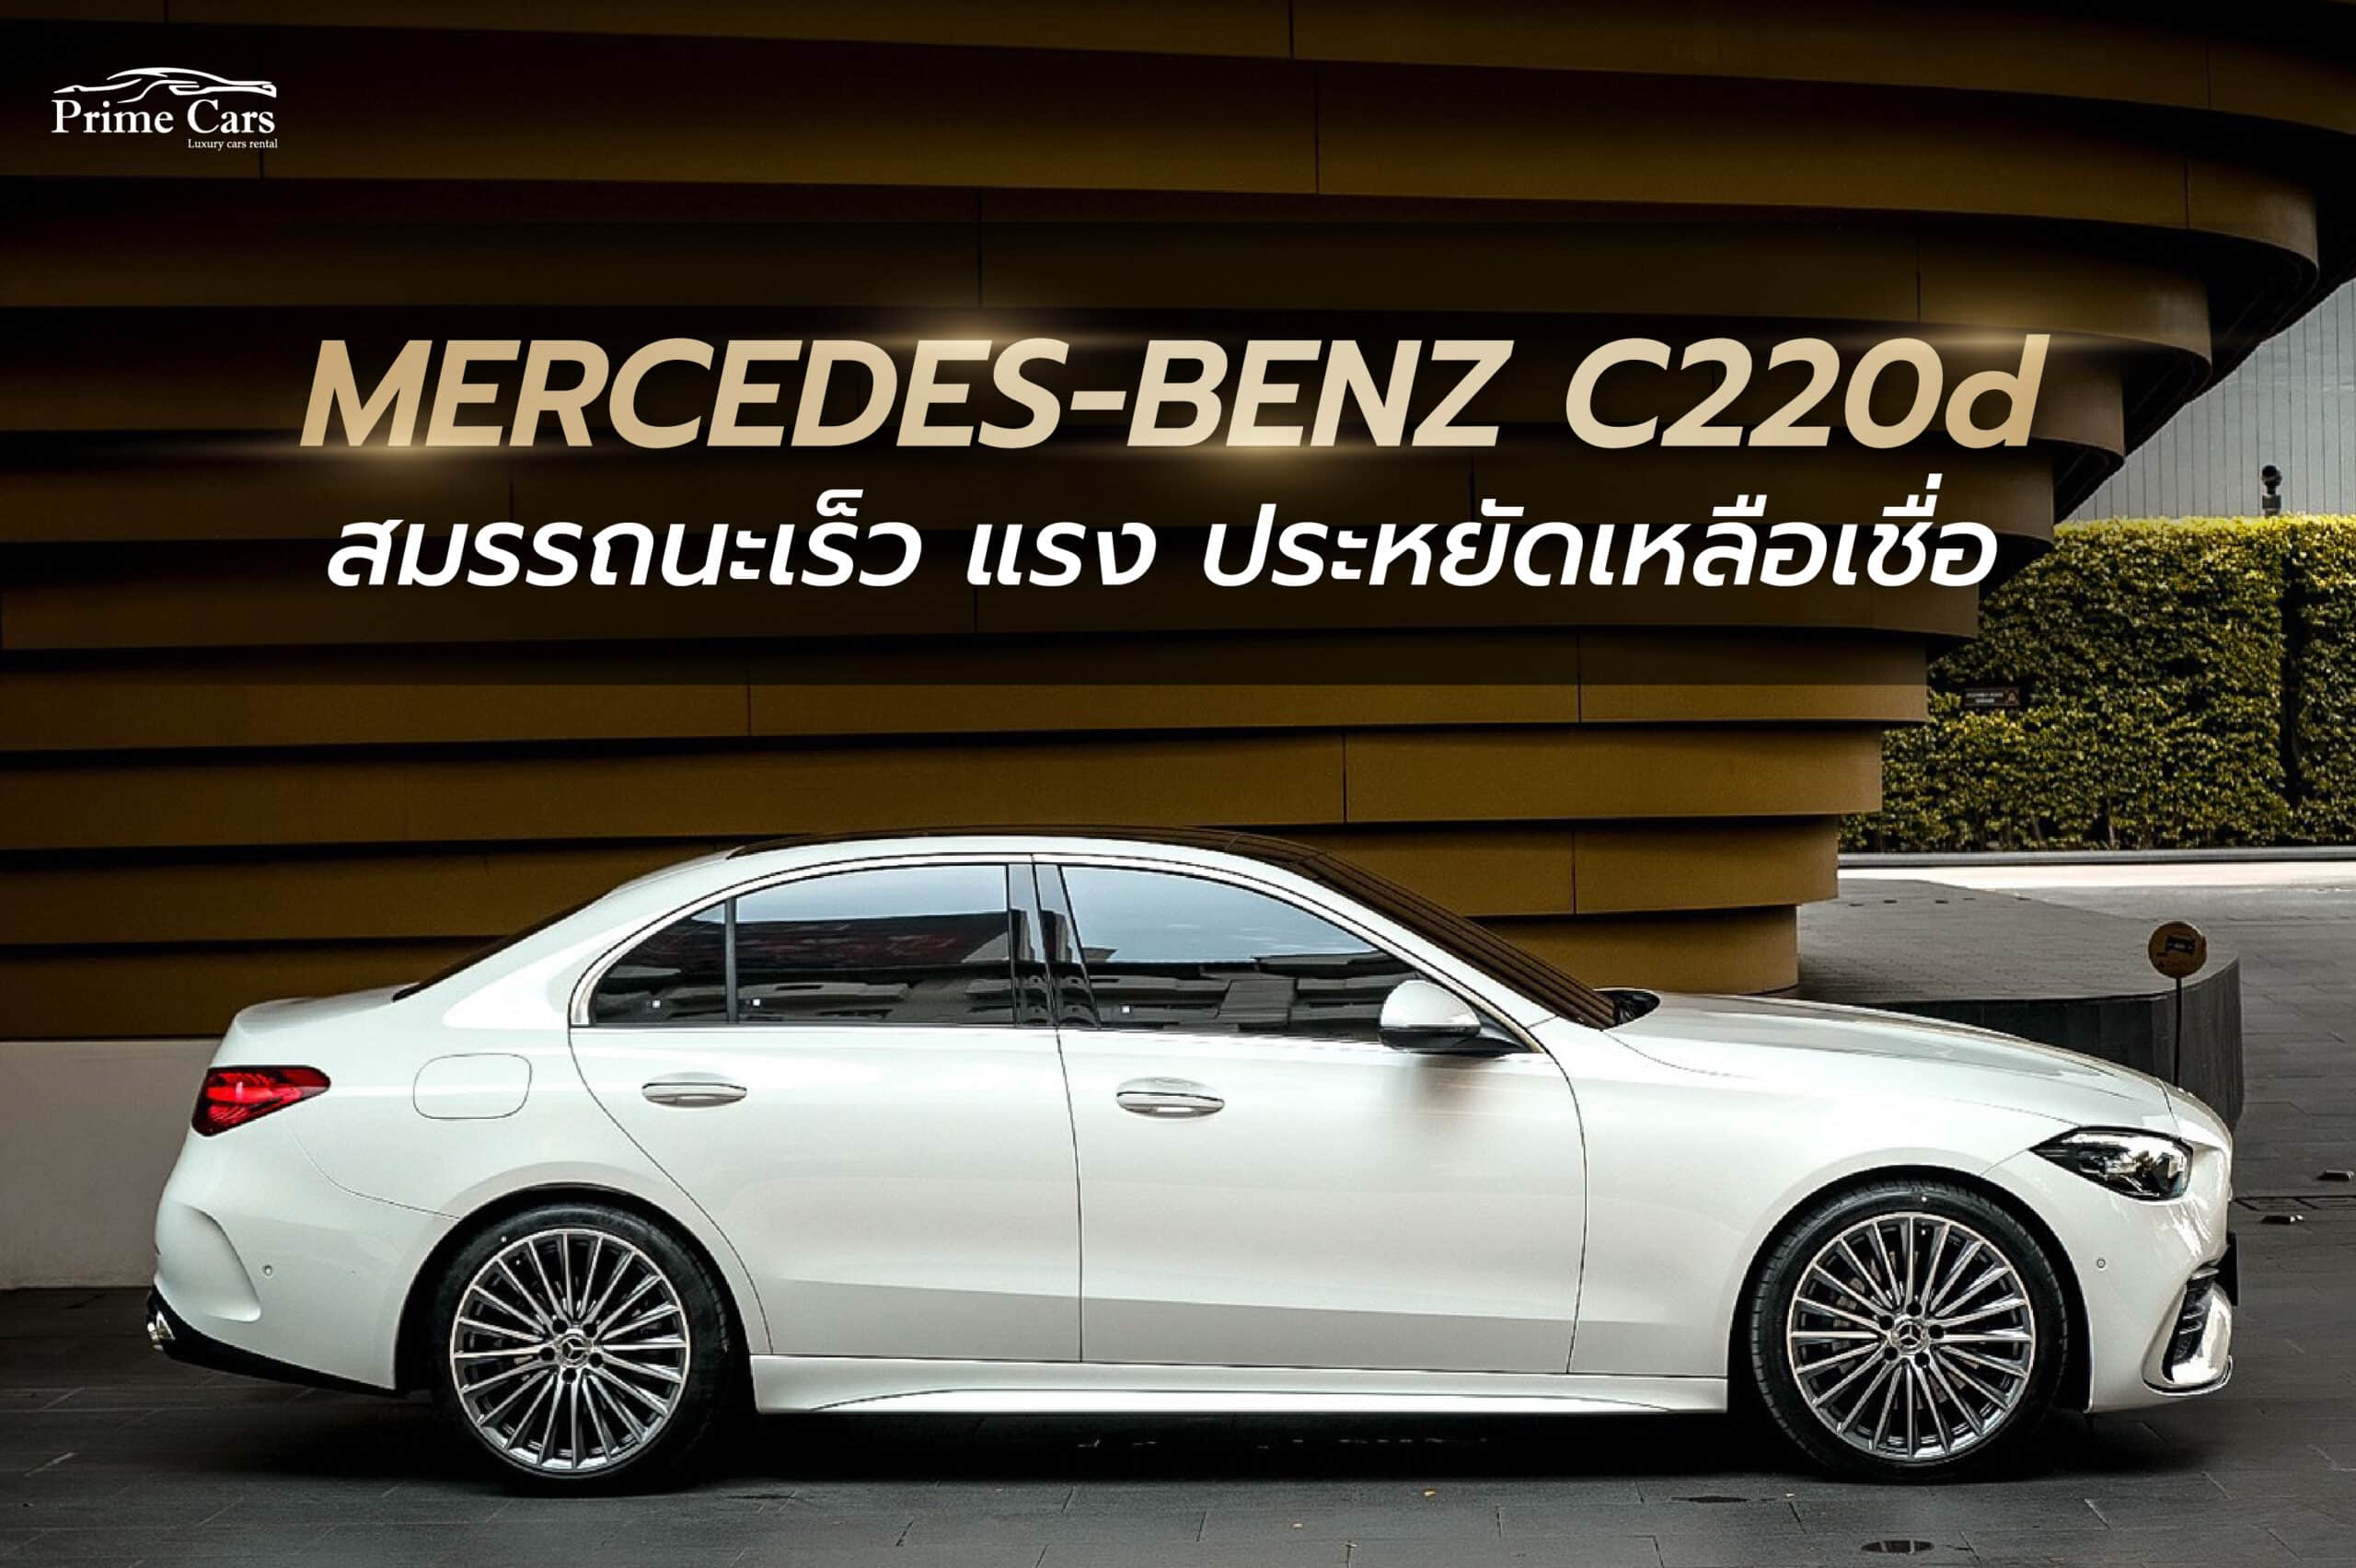 Benz C220d